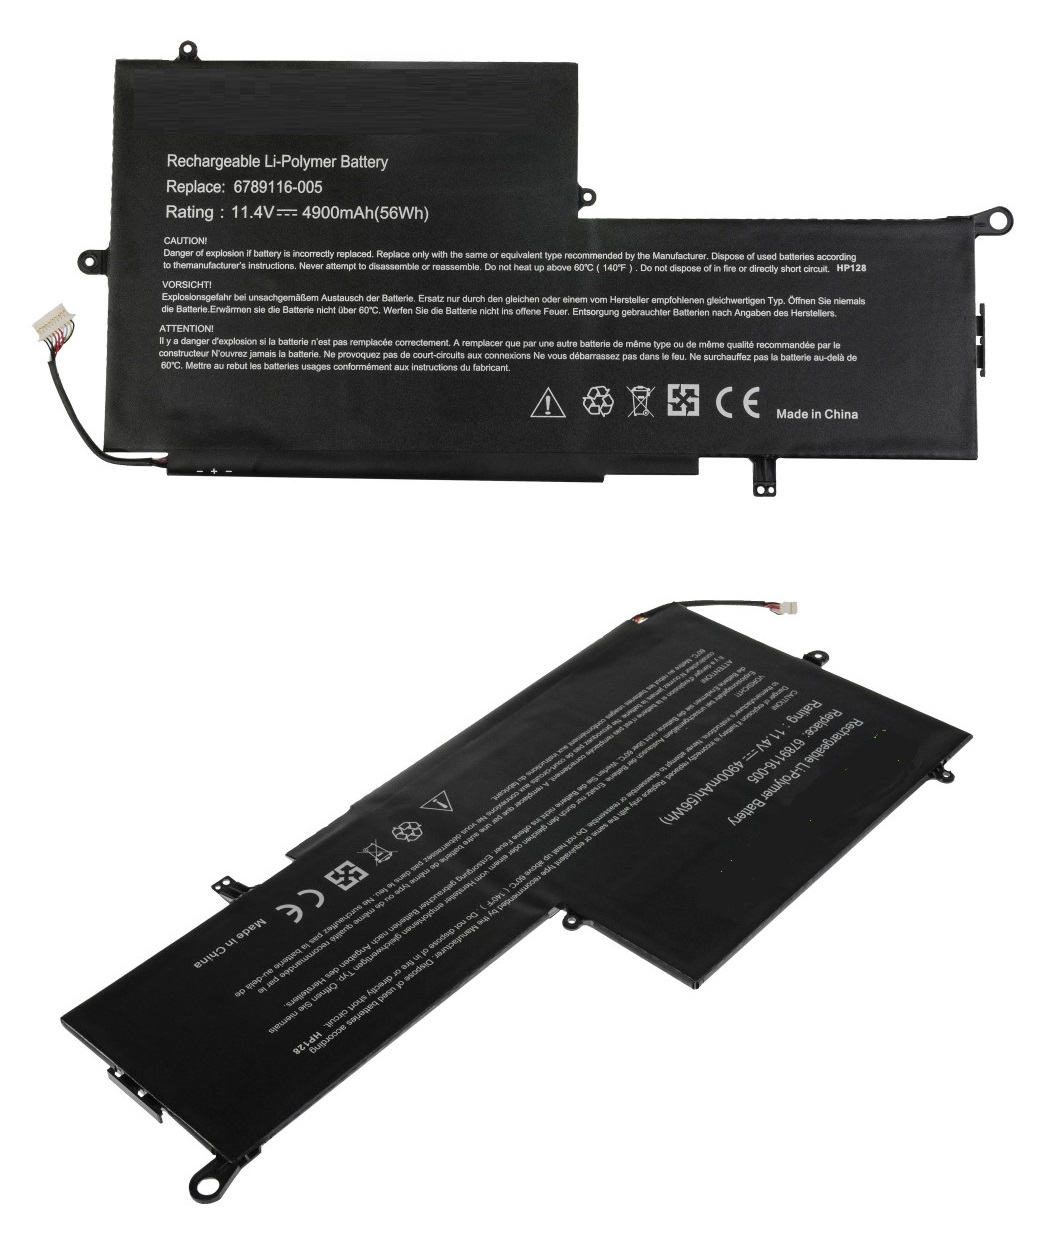 HP Spectre x360 13-001ns L5D96ea Laptop Battery